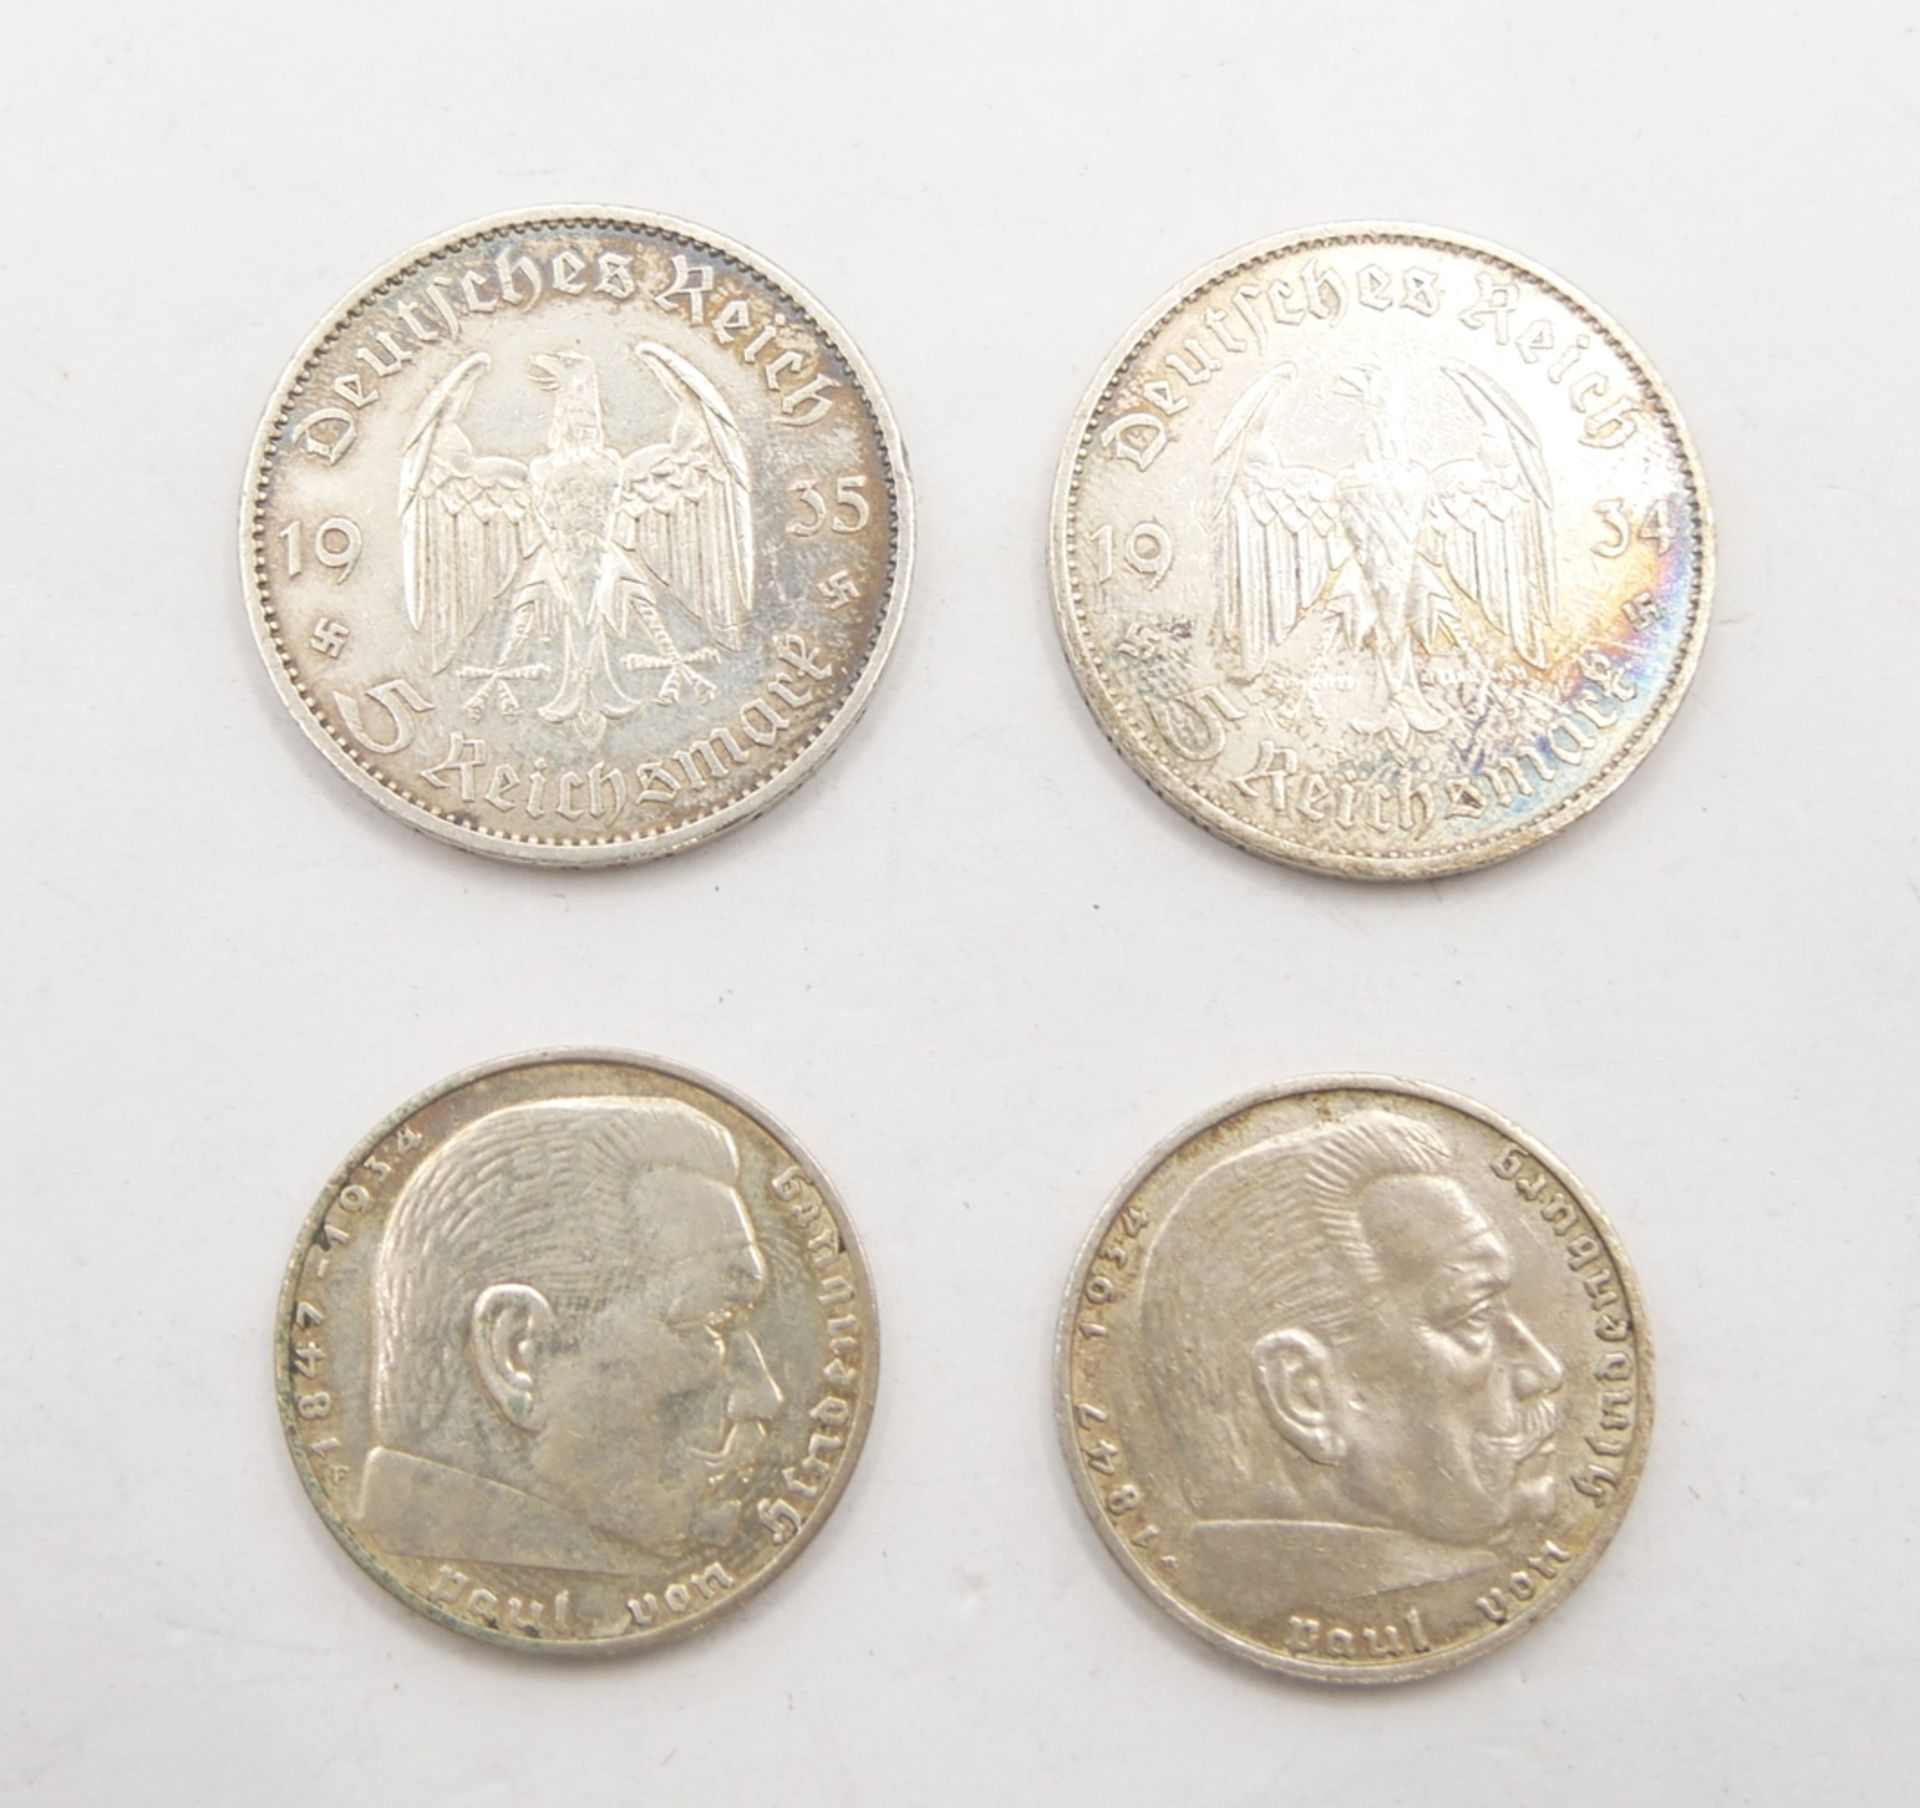 kleines lot Münzen 3. Reich dabei 2x2 Mark sowie 2x5 Mark. - Bild 2 aus 2